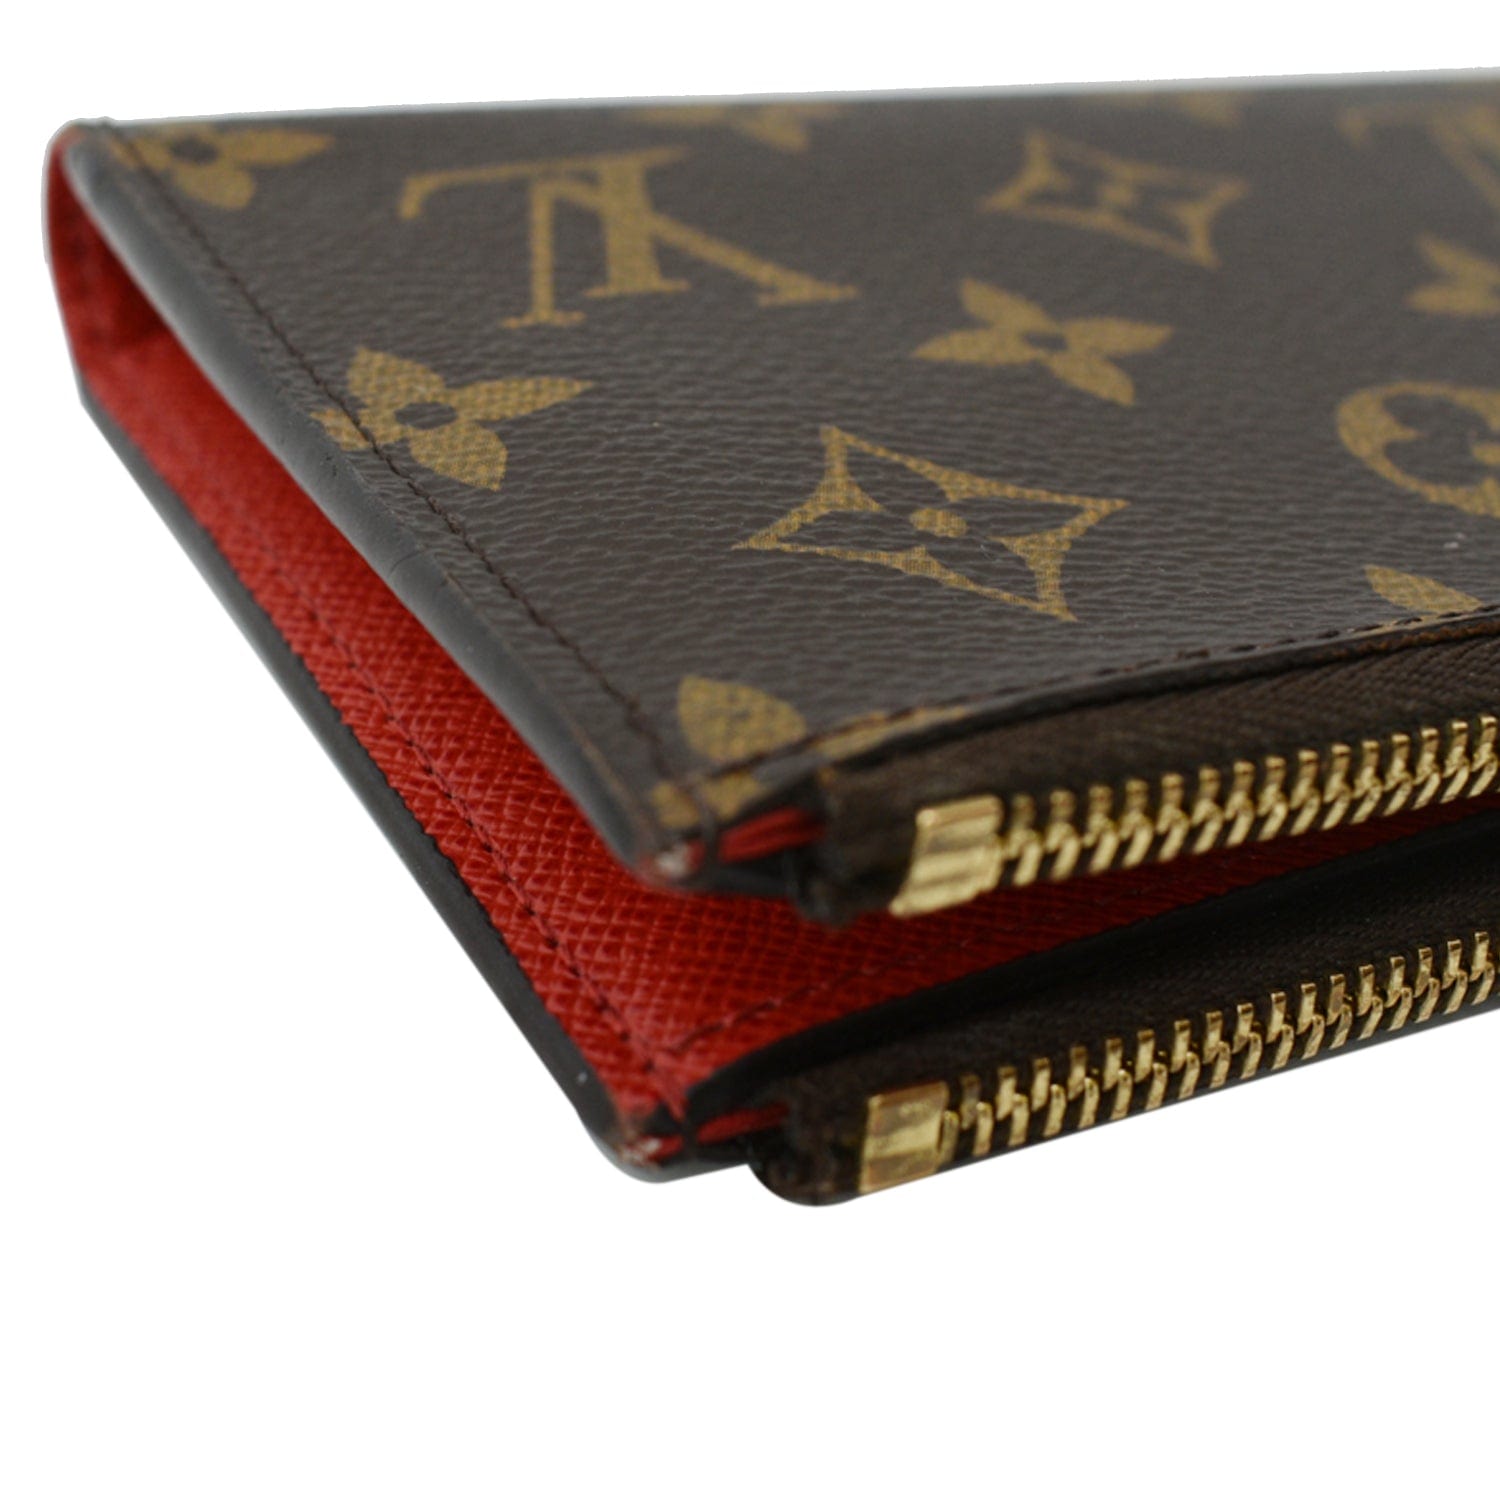 Louis Vuitton Adele Monogram Brown Wallet DOOXZDE 144020008863